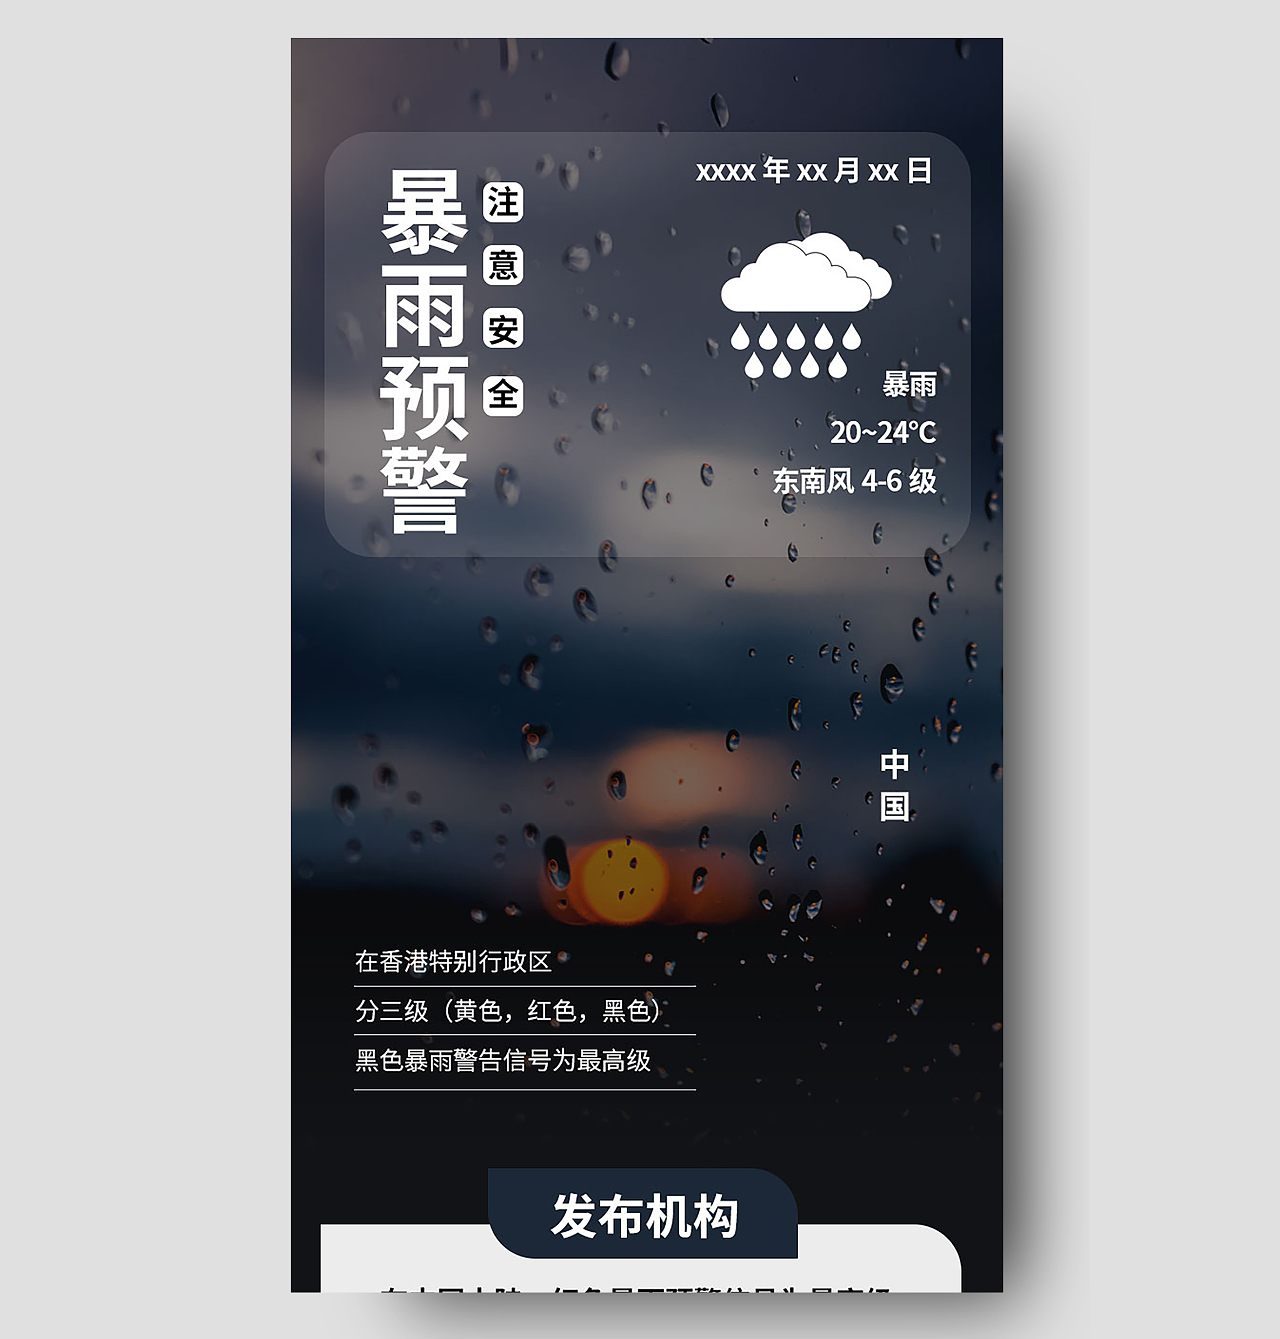 黑色背景简洁大气暴雨预警宣传手机长图设计